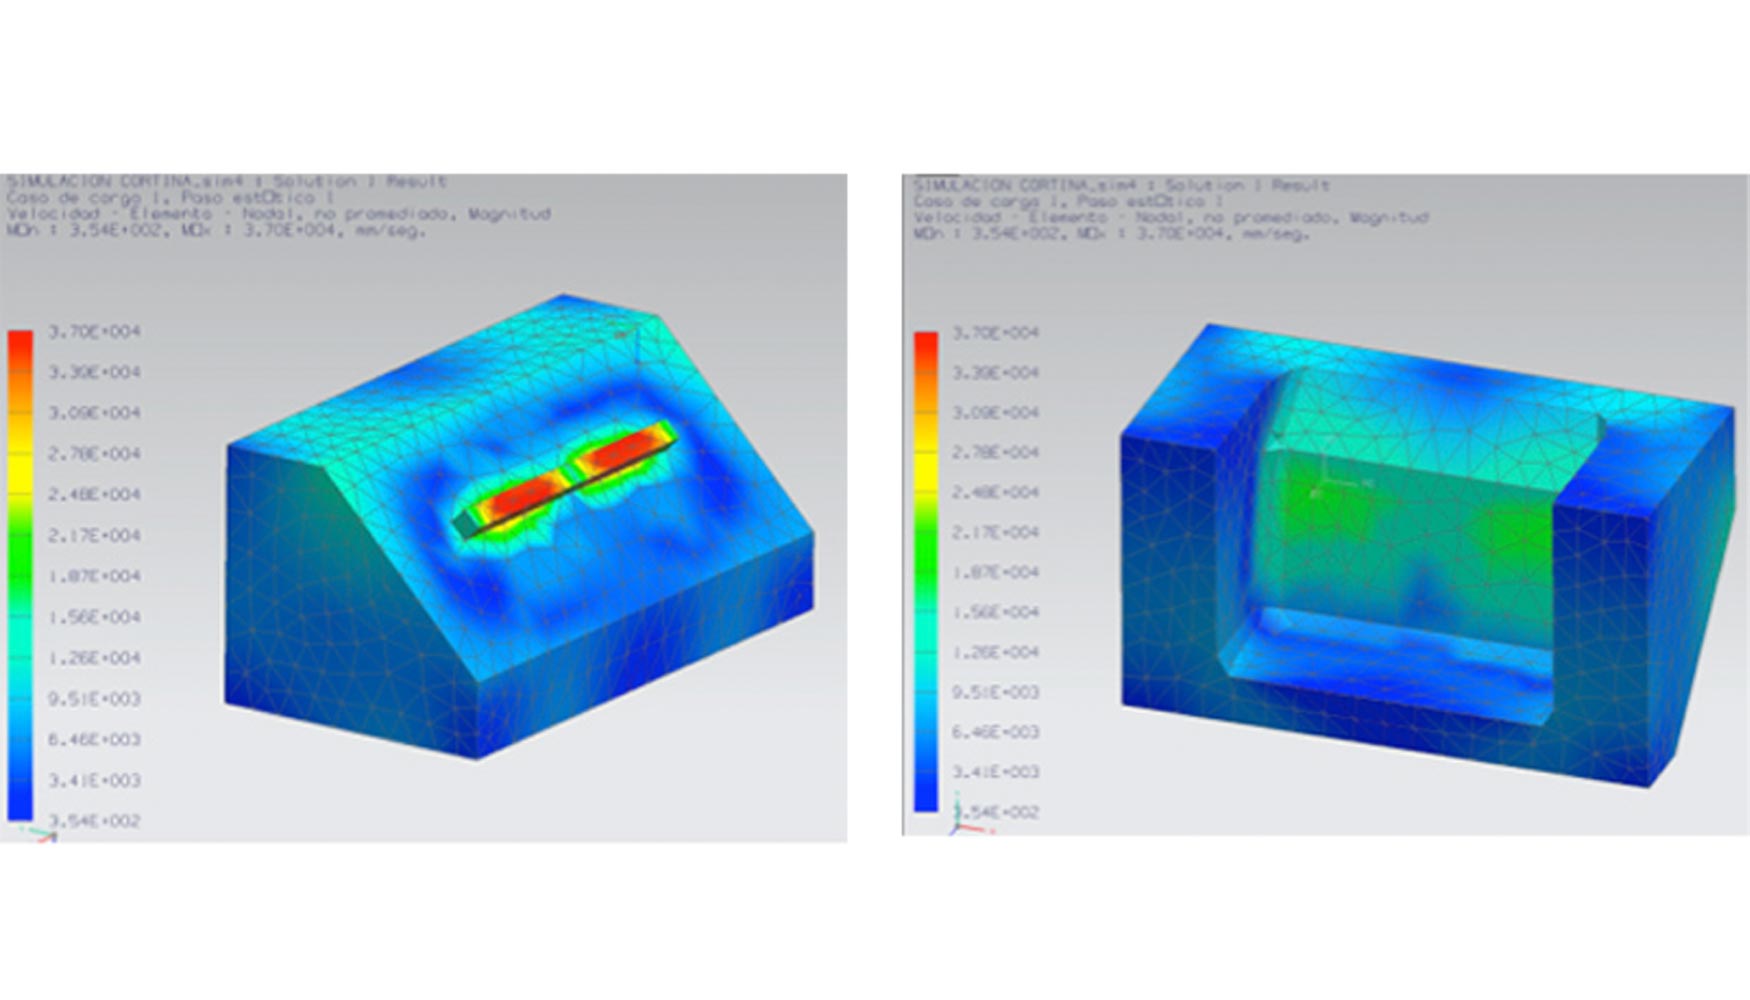 Los ingenieros de Istobal utilizan NX CAE para simular variaciones en los productos, como la fuerza y los materiales